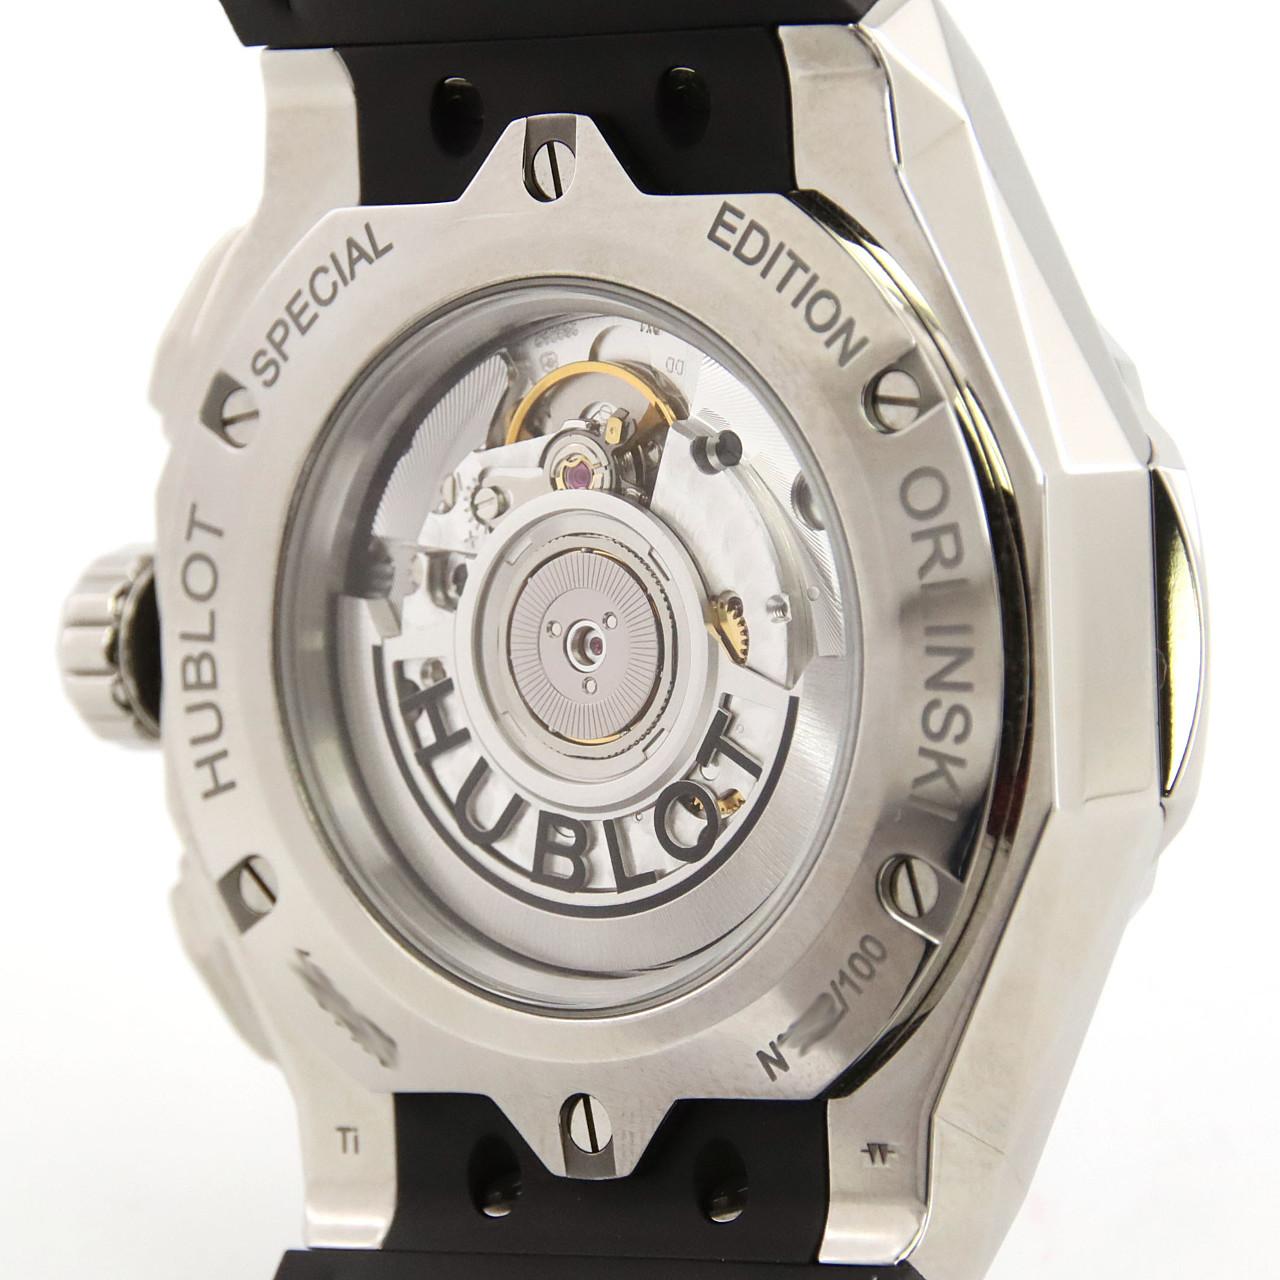 【HUBLOT】ウブロ アエロフュージョン 525.NE.0127.LR ステンレススチール×クロコダイル 白 自動巻き クロノグラフ メンズ 黒文字盤 腕時計